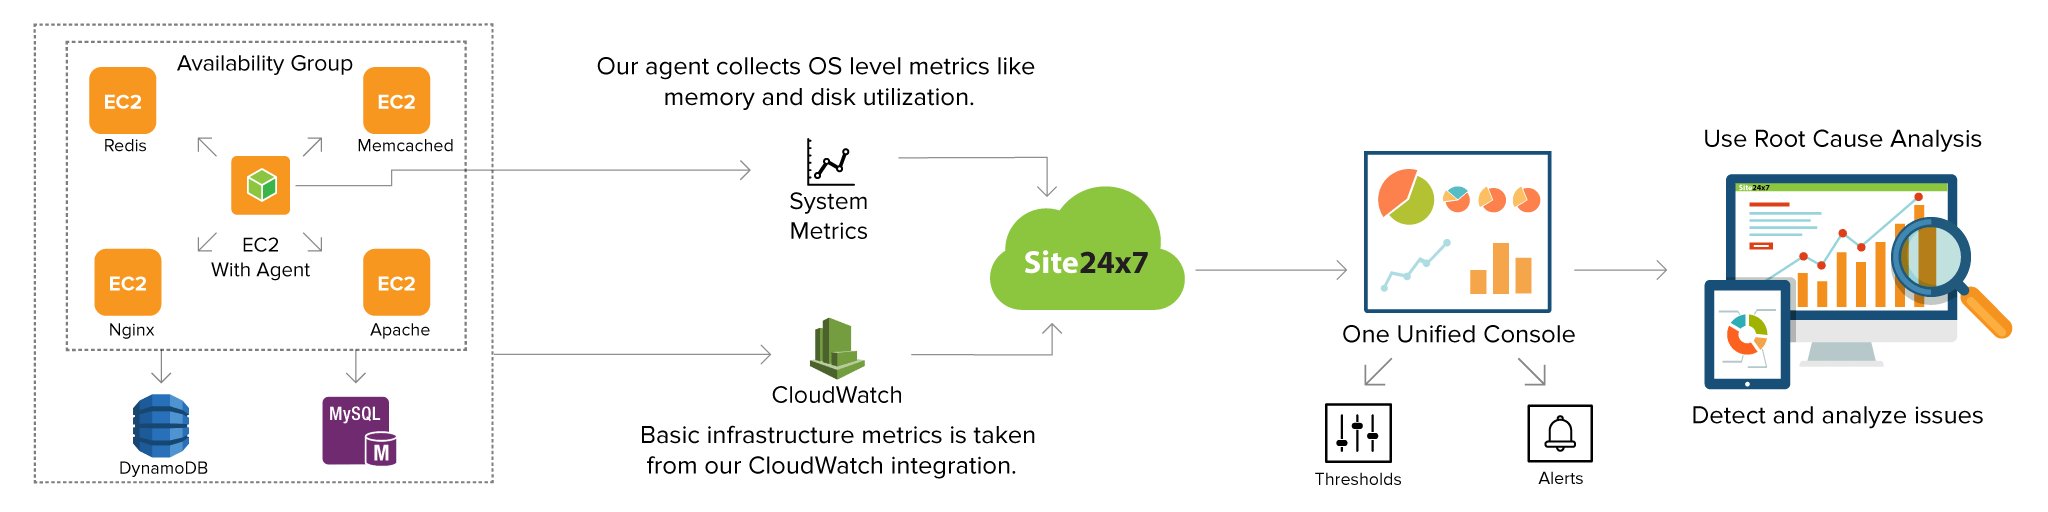 Amazon EC2 monitoring